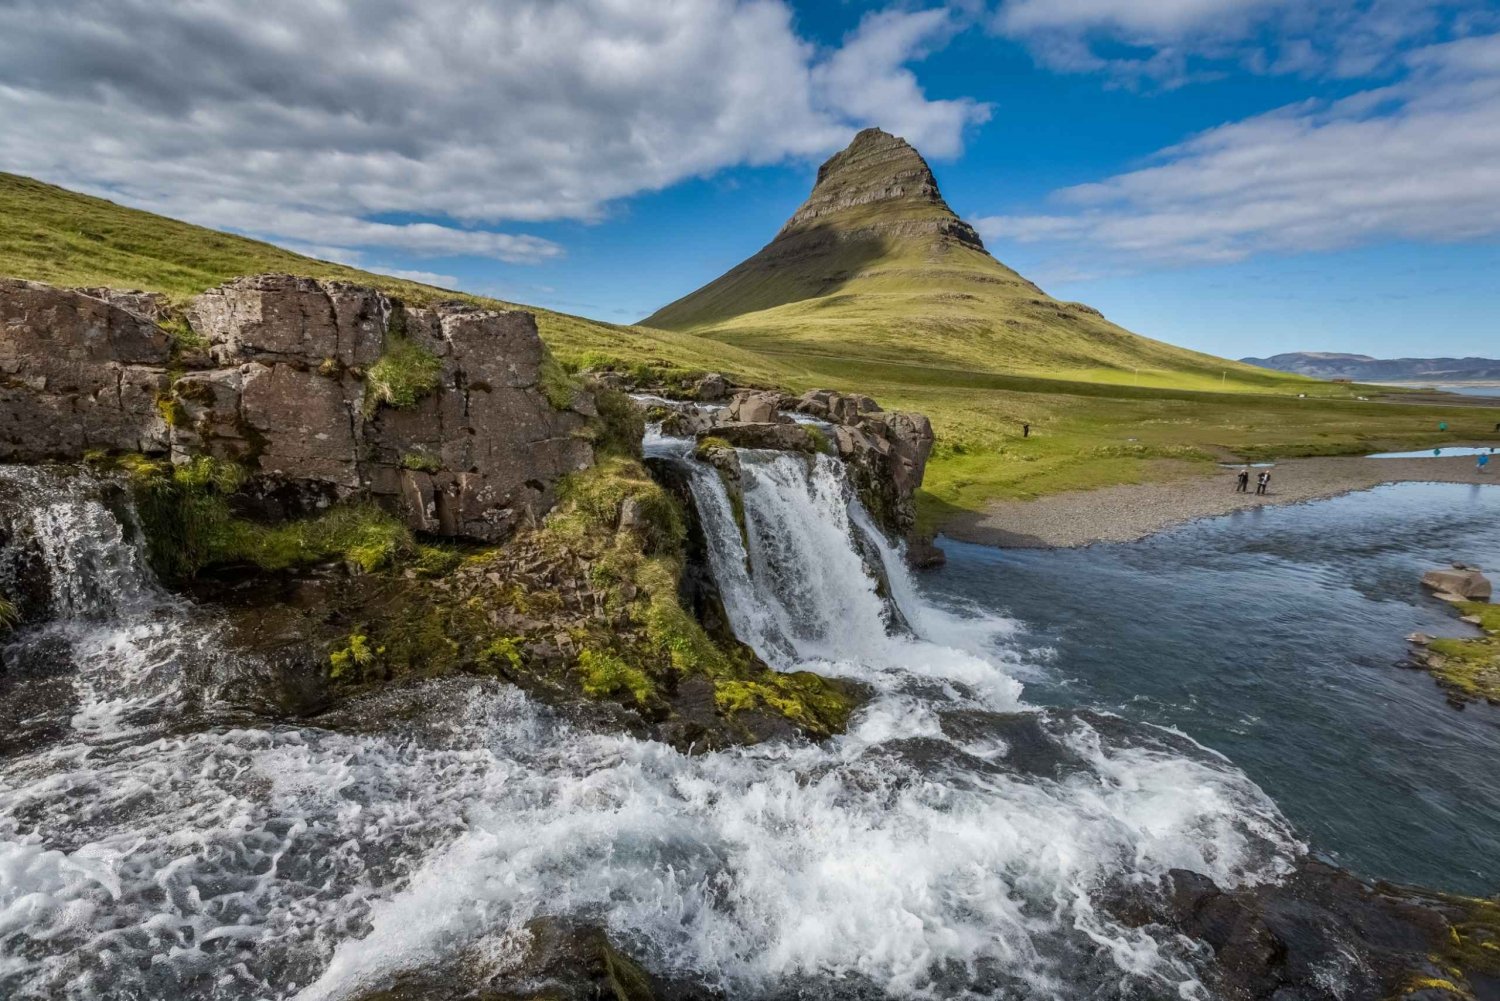 From Reykjavik: The Wonders of Snæfellsnes Peninsula